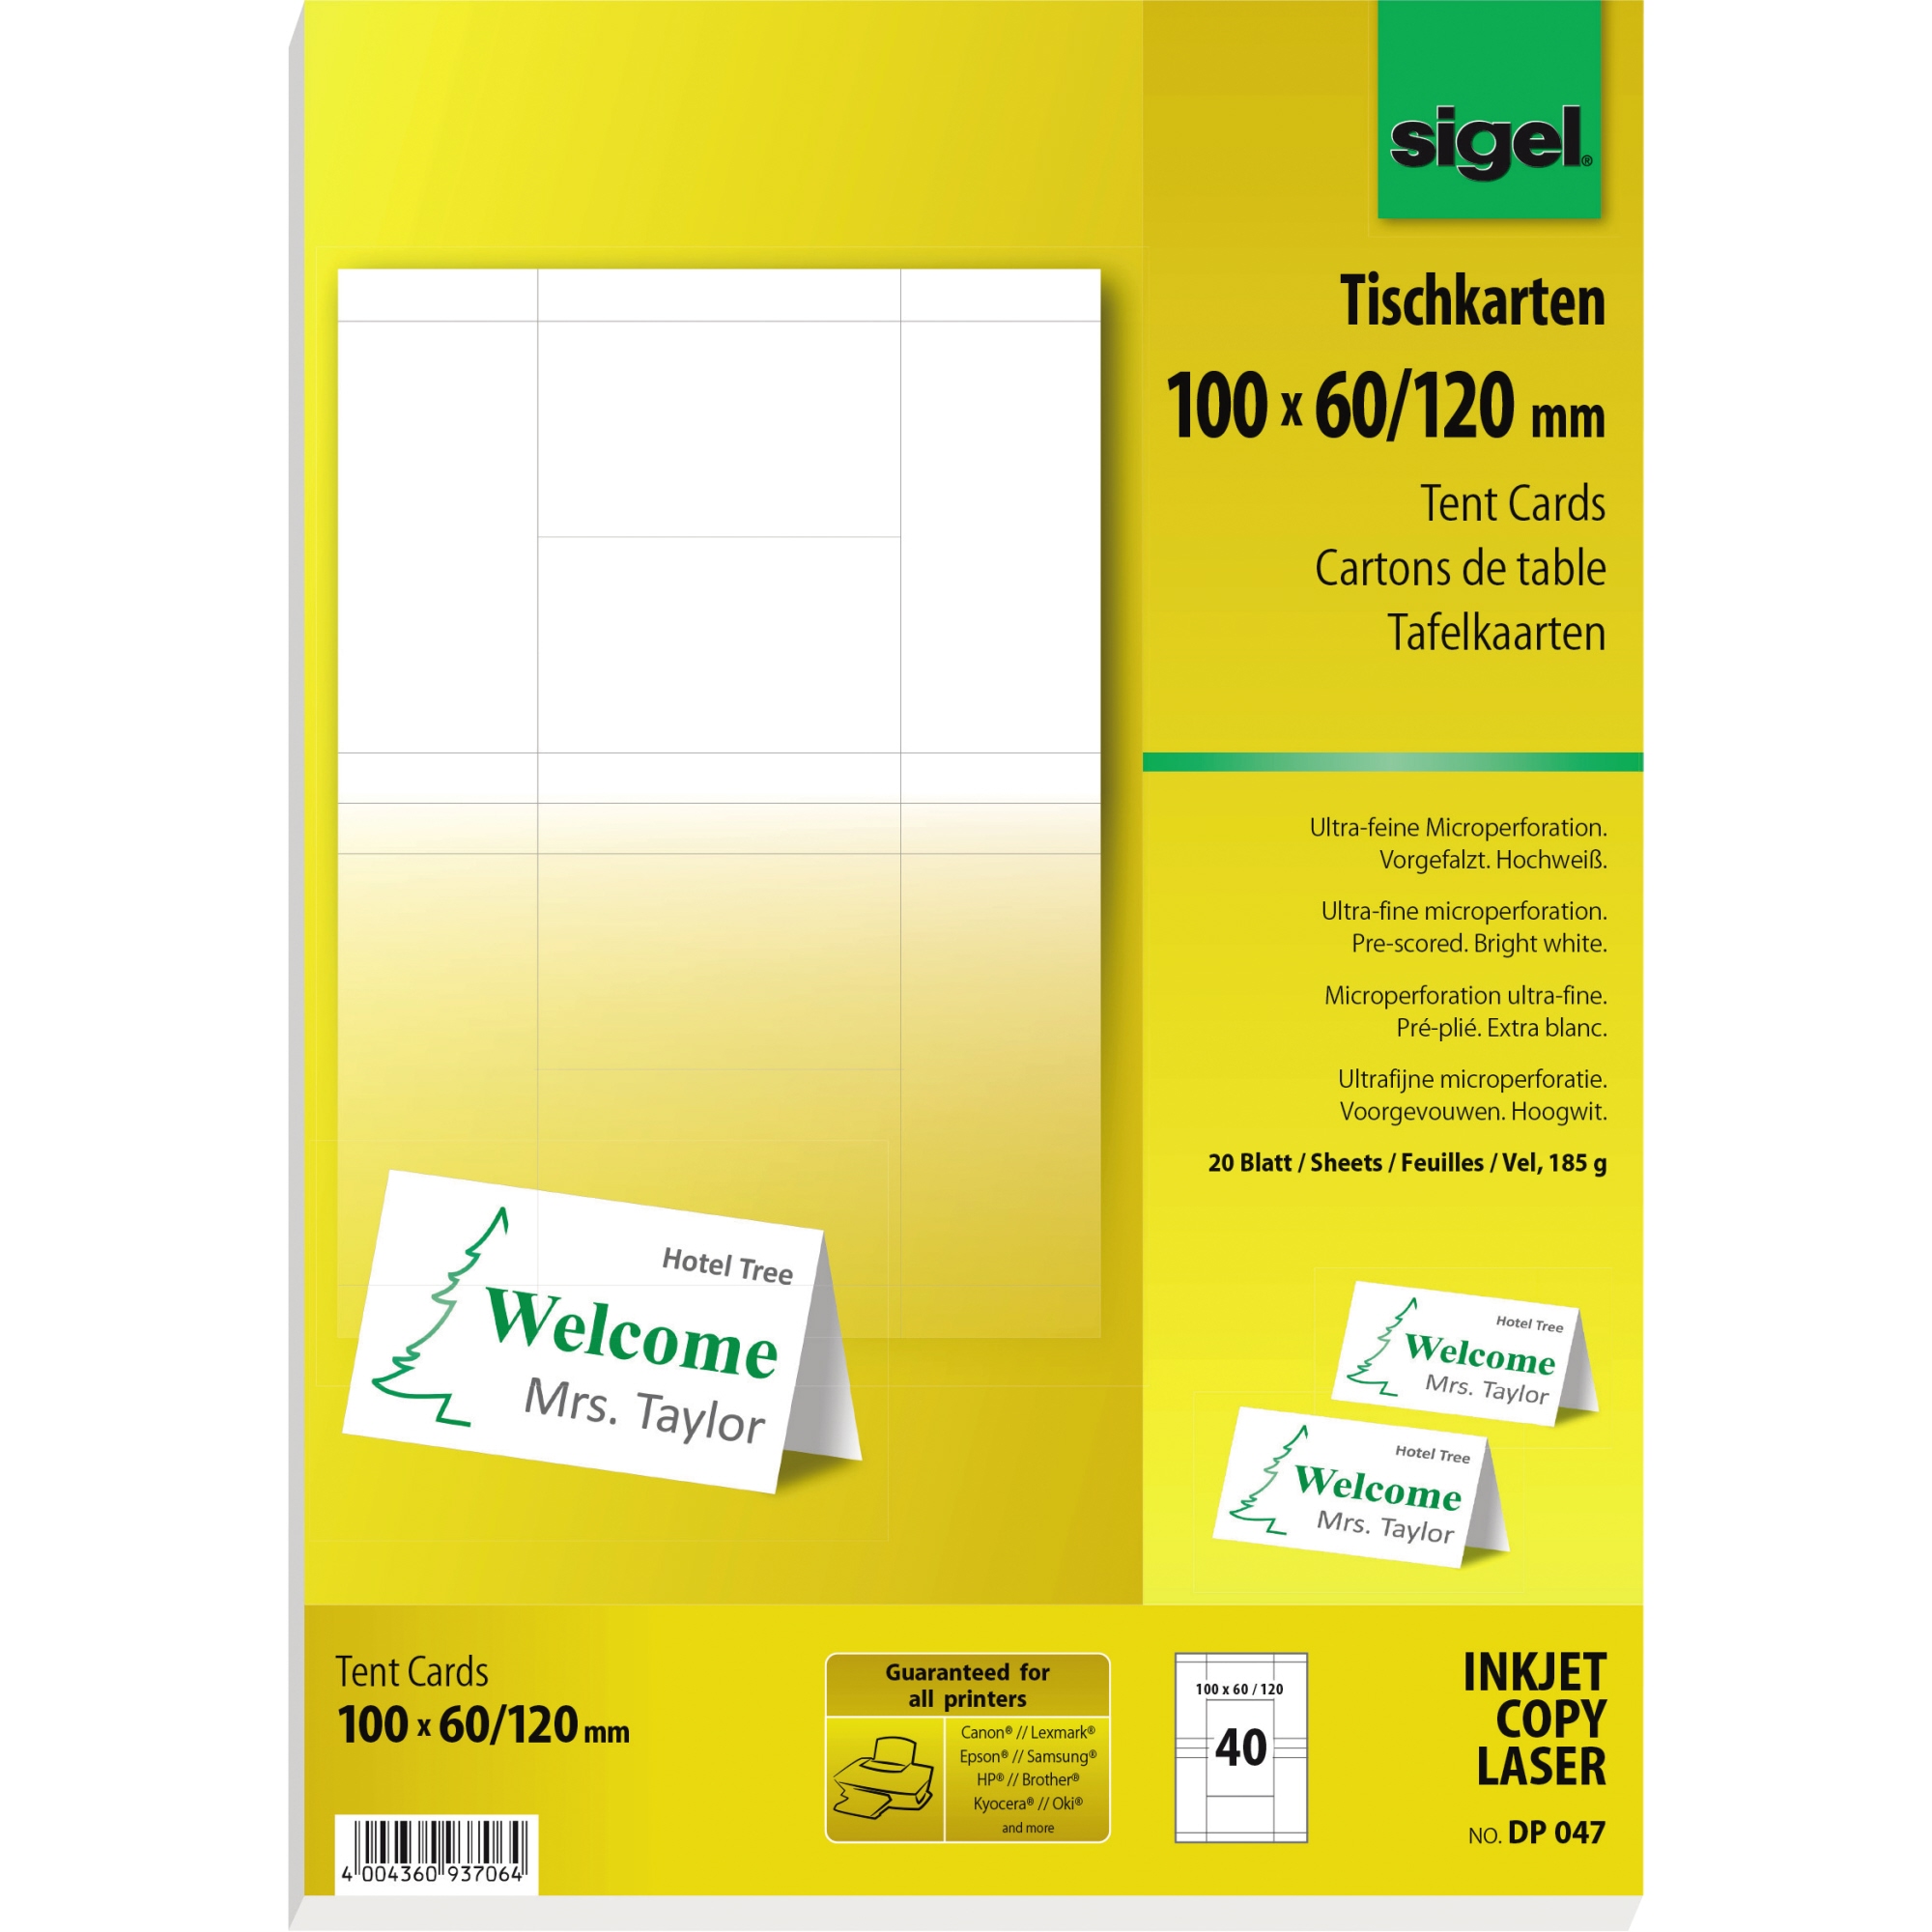 SIGEL Tischkarte 100 x 60/120 mm